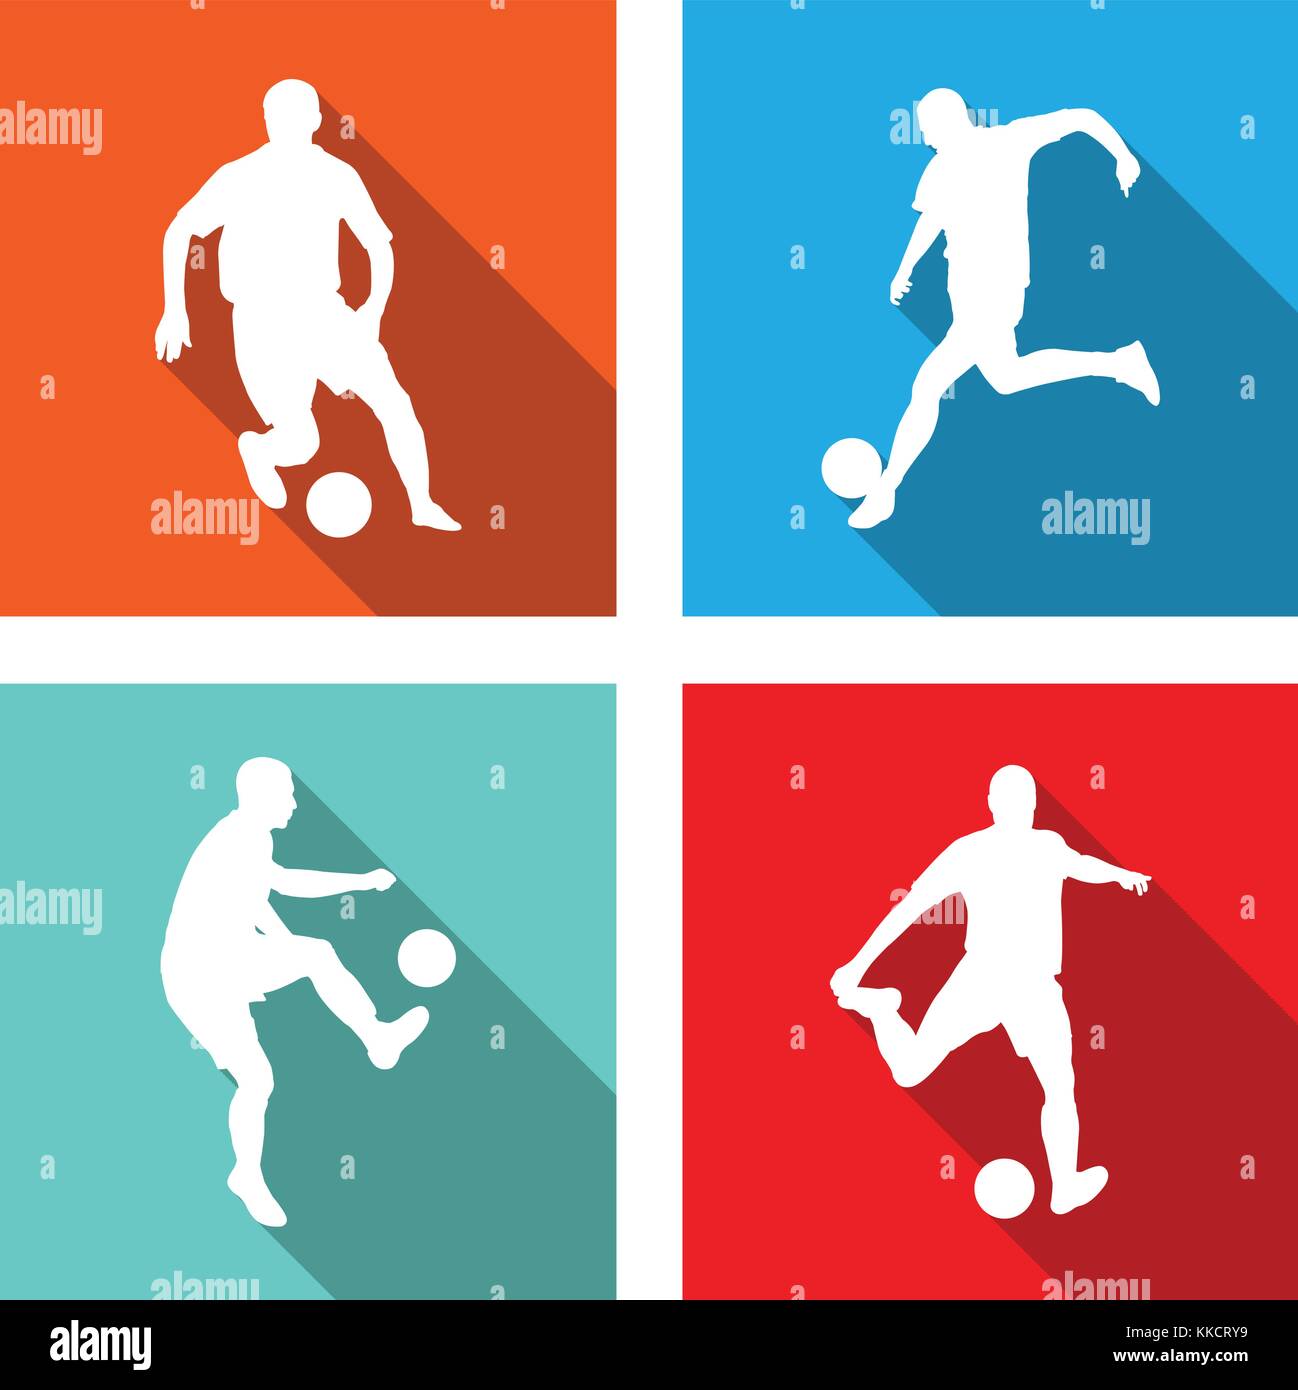 Fußball Silhouetten auf Flachbild Symbole für das Web oder mobile Anwendungen - Vektor Stock Vektor